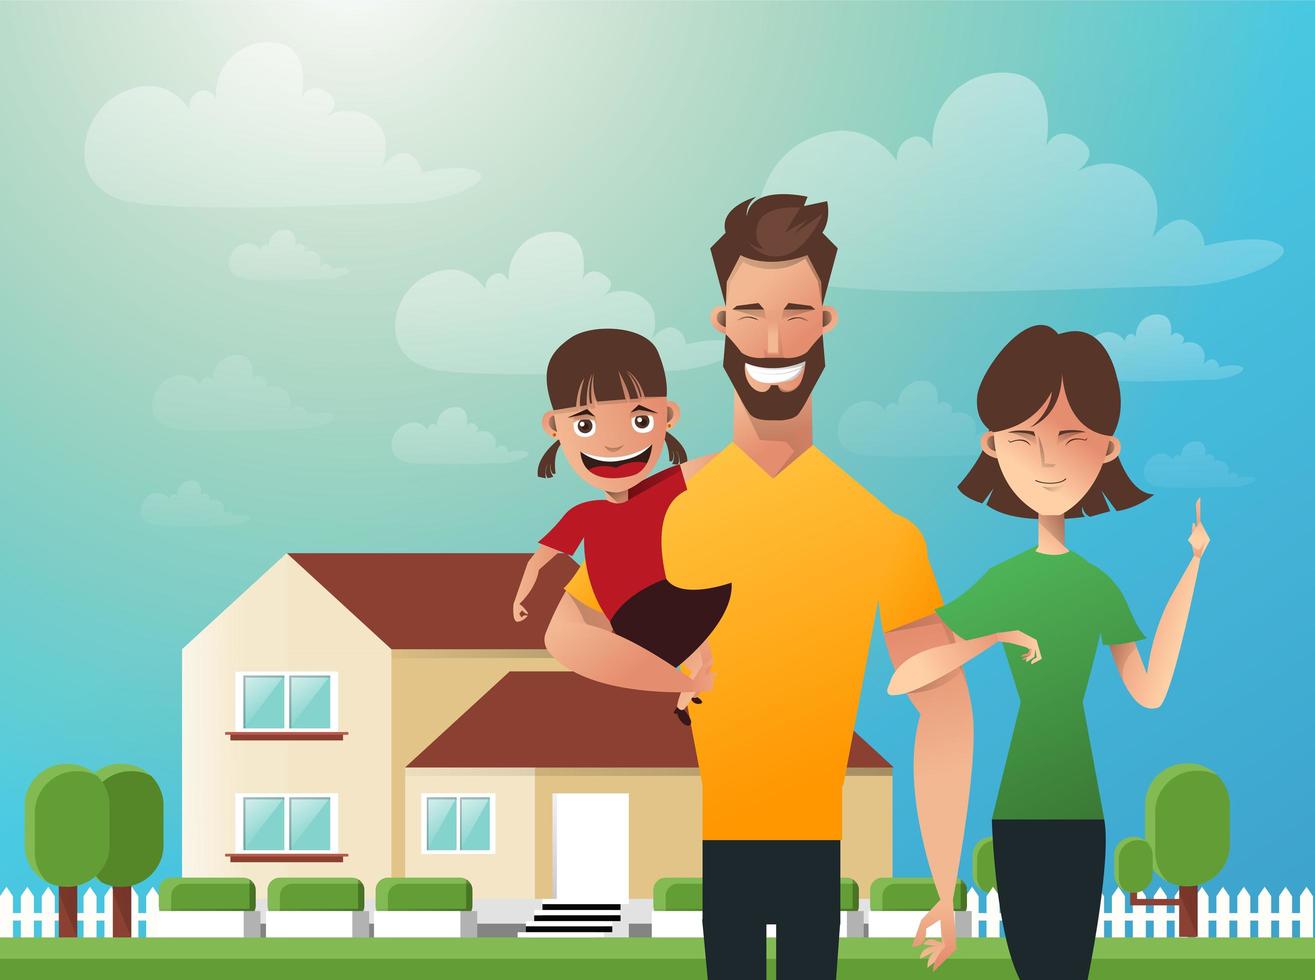 gelukkig gezin op de achtergrond van zijn huis. vader, moeder en dochter samen buitenshuis. vectorillustraties in de vlakke stijl vector